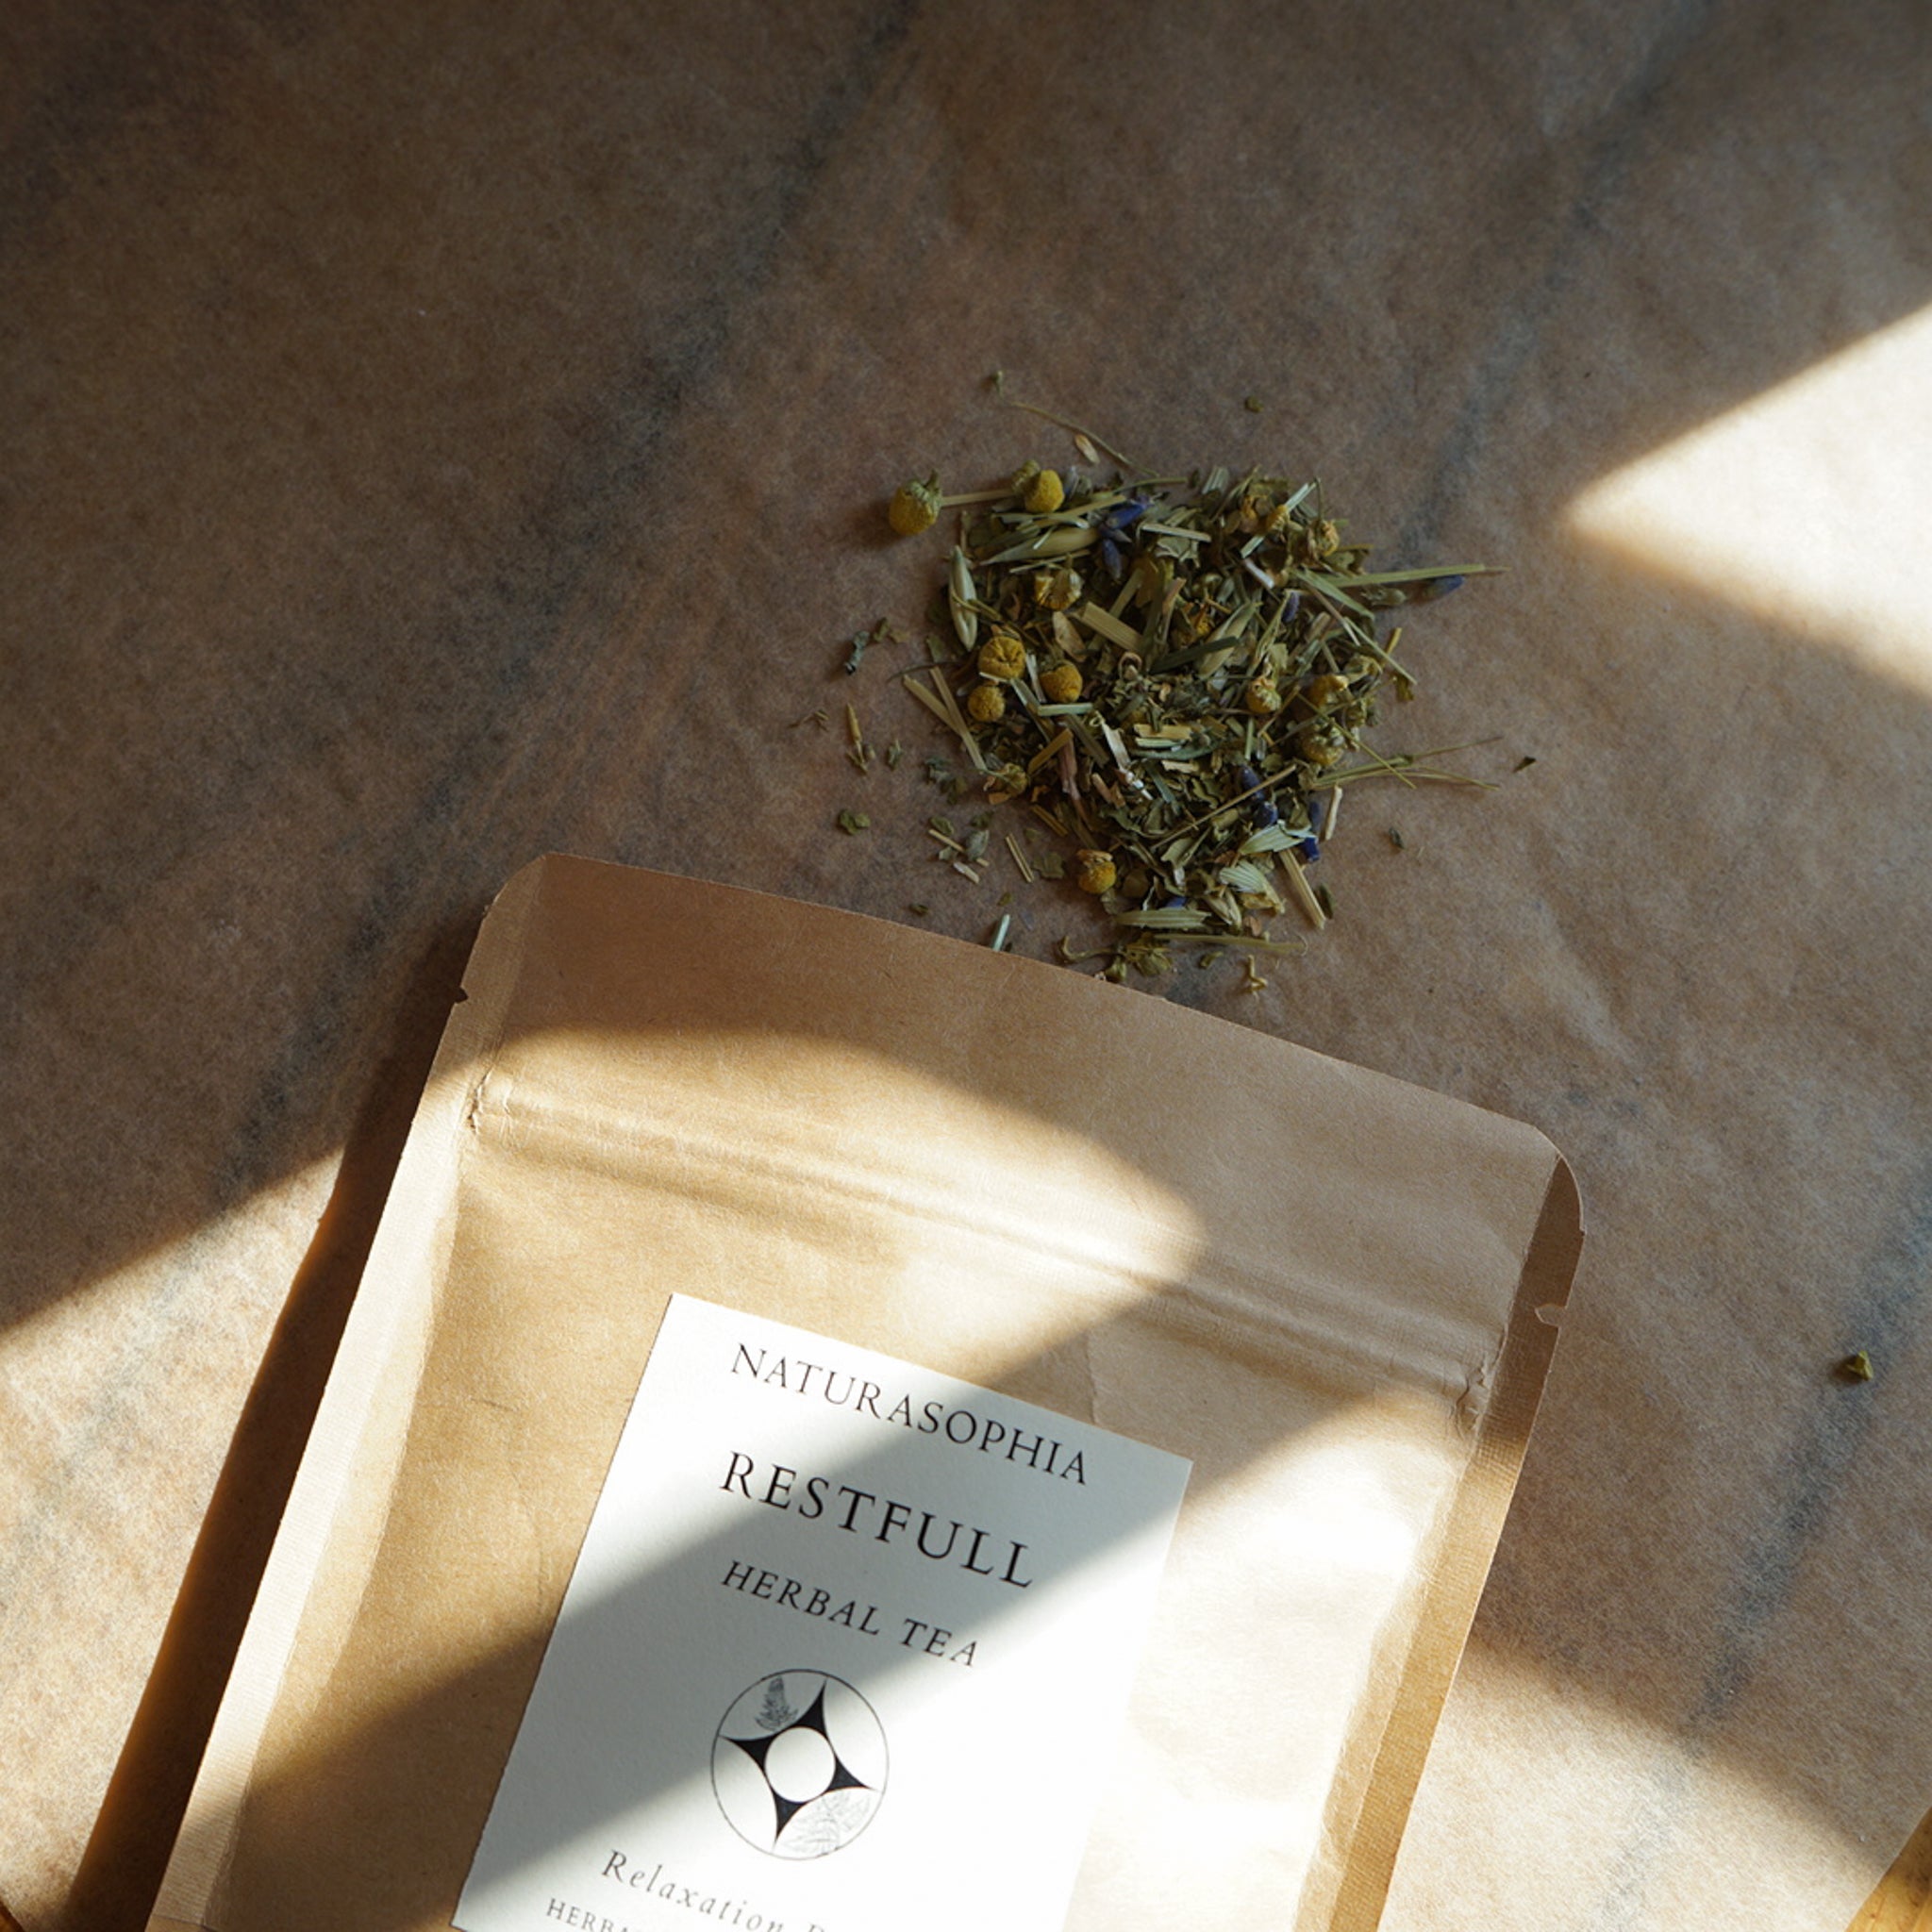 Restfull - Herbal Tea